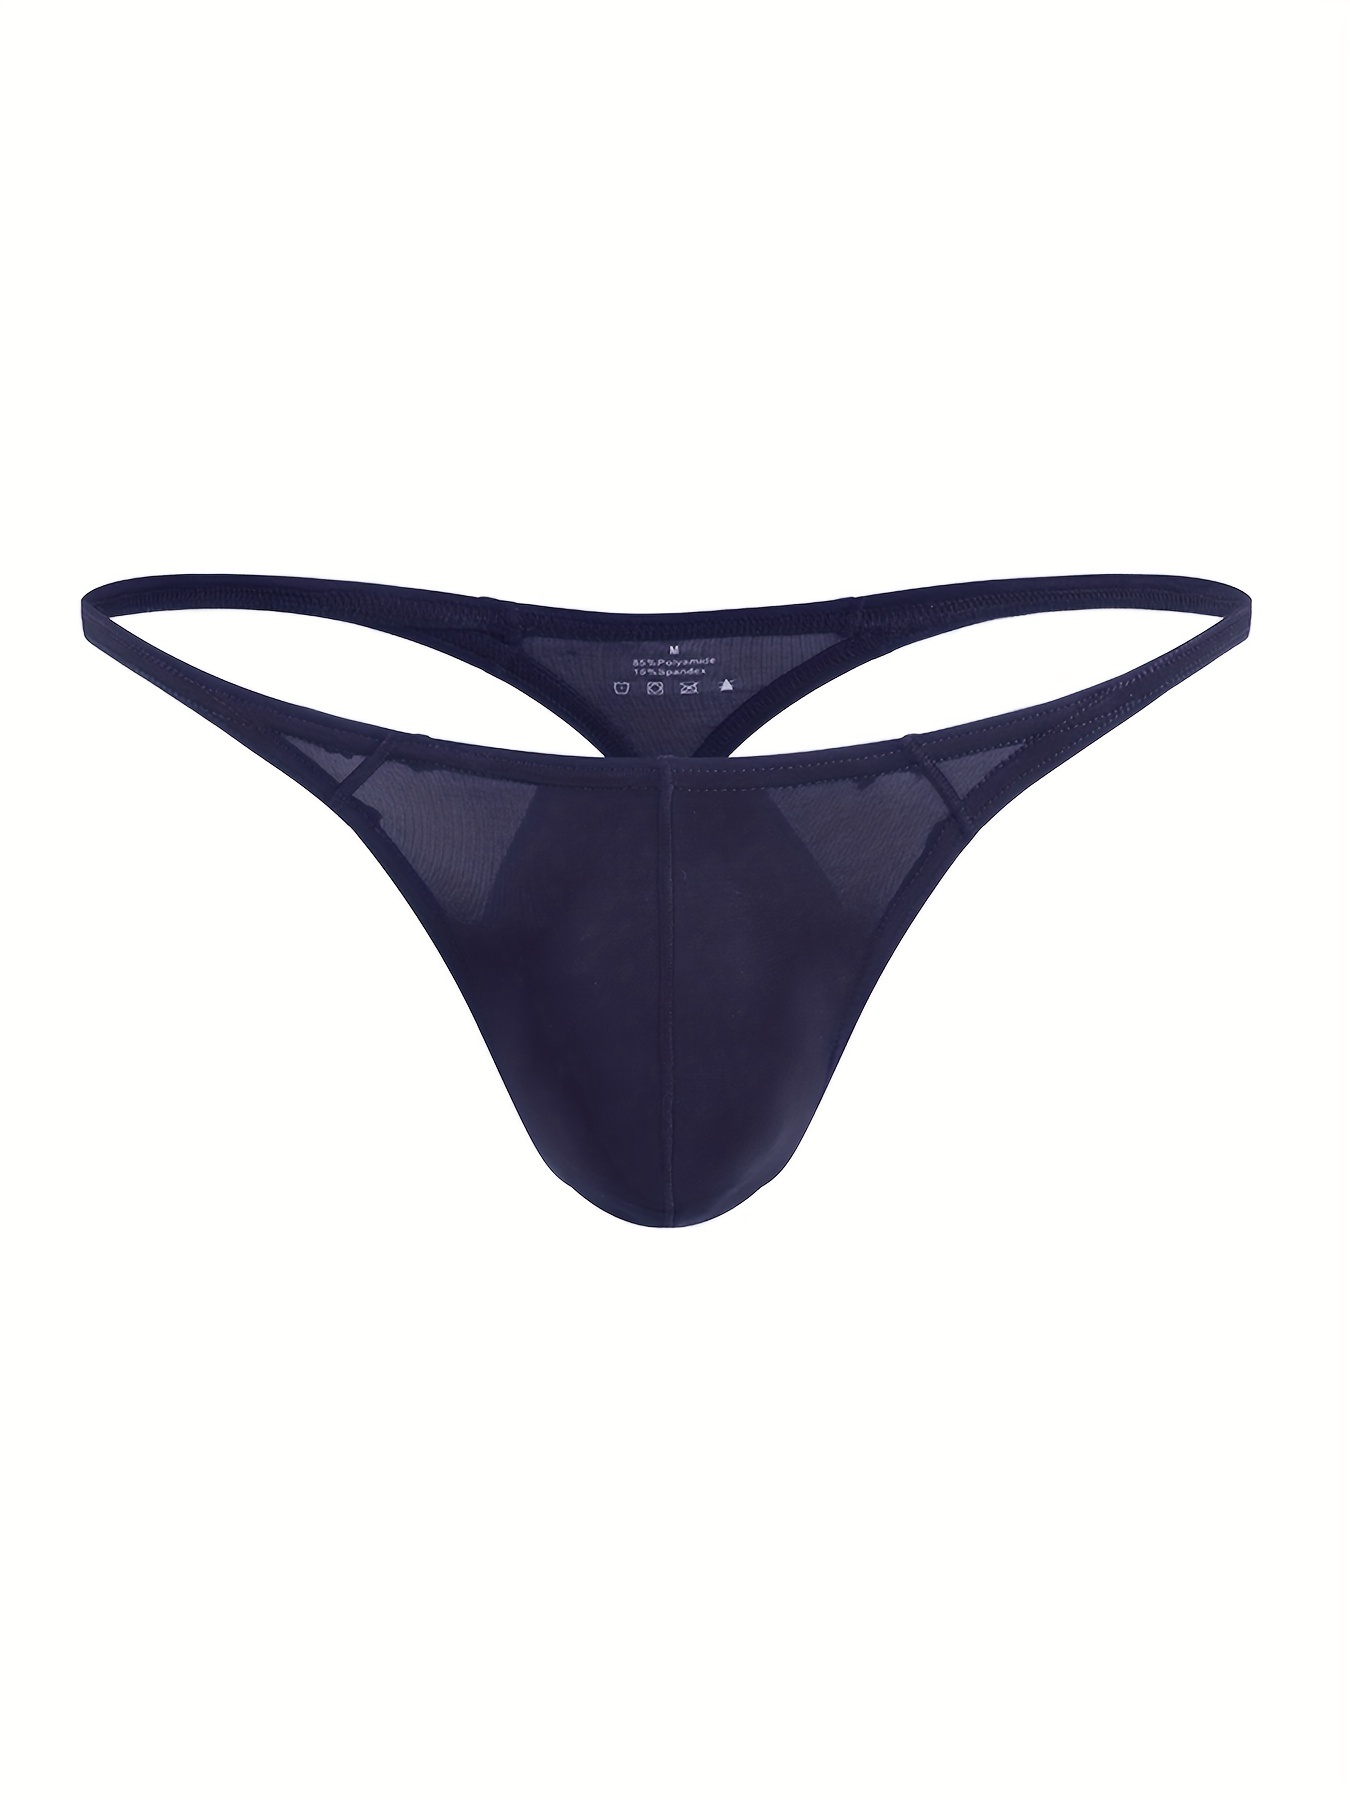 Hom Men blue cotton stretch Freddy G-string thong underwear size L XL